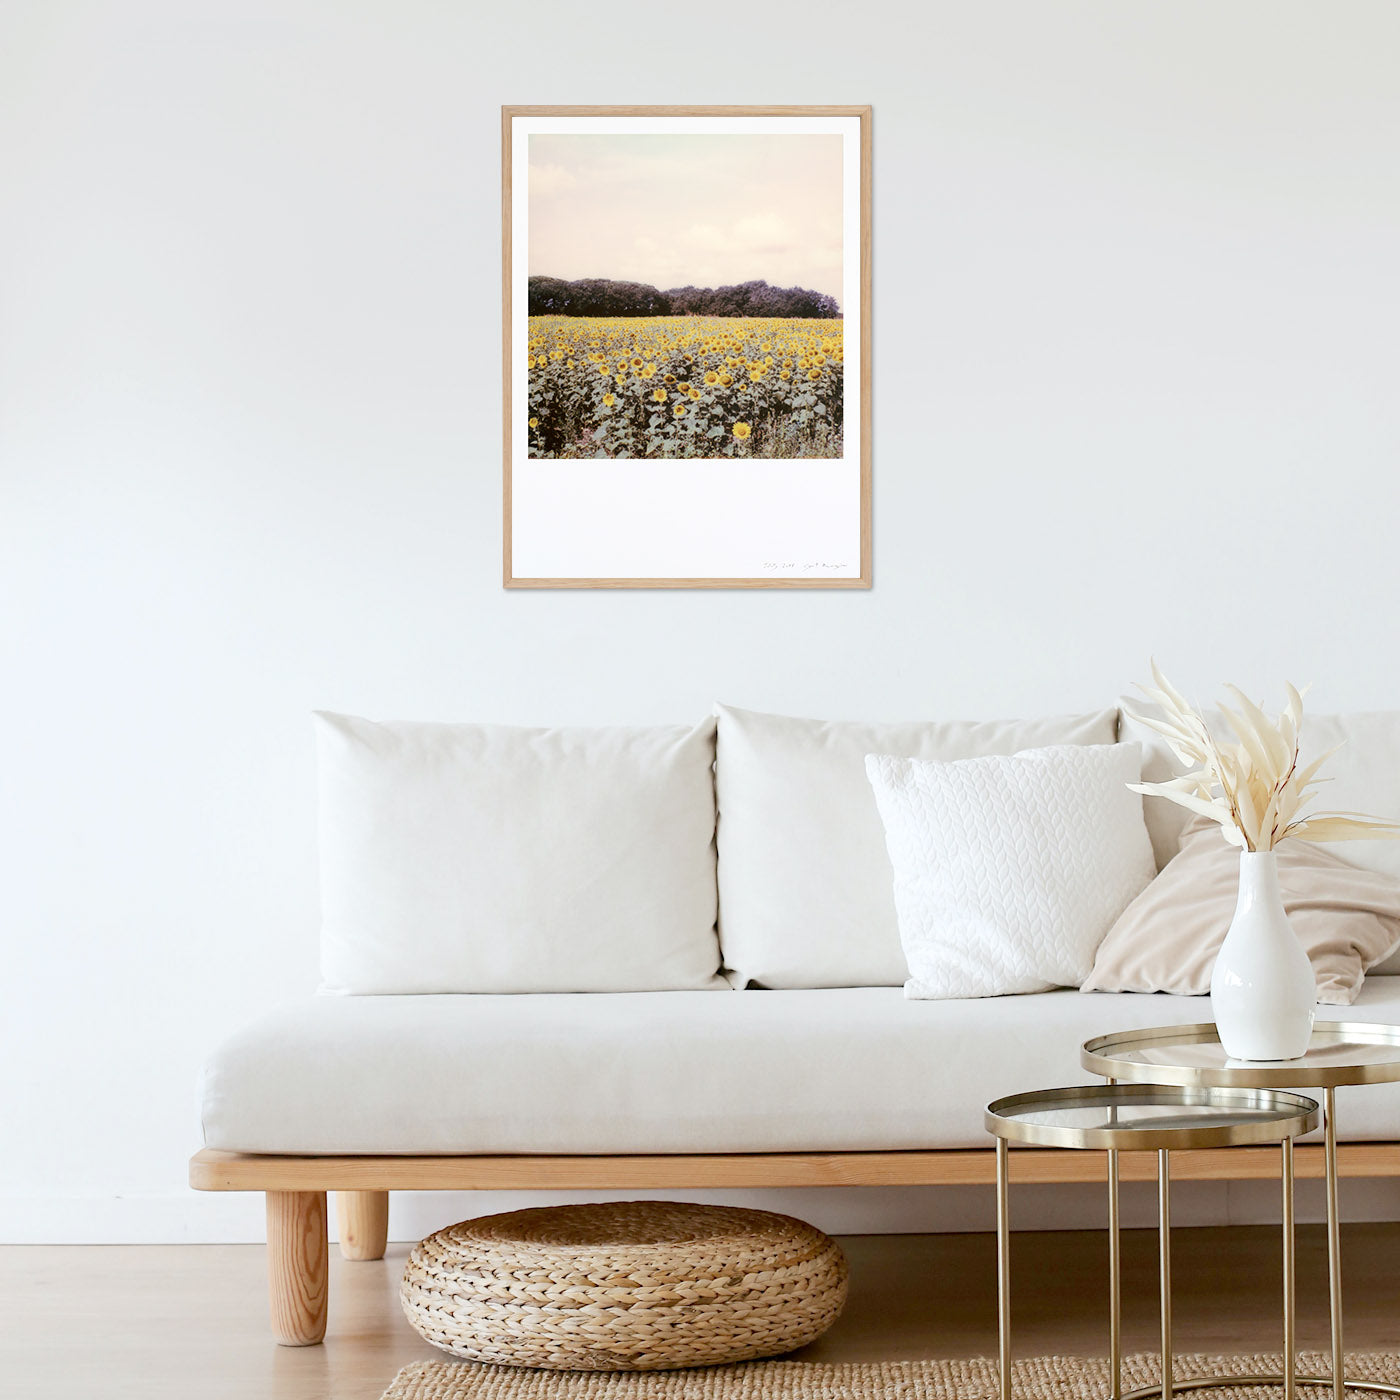 deco-home-sunflower-frame-living-room-inspiration-photo